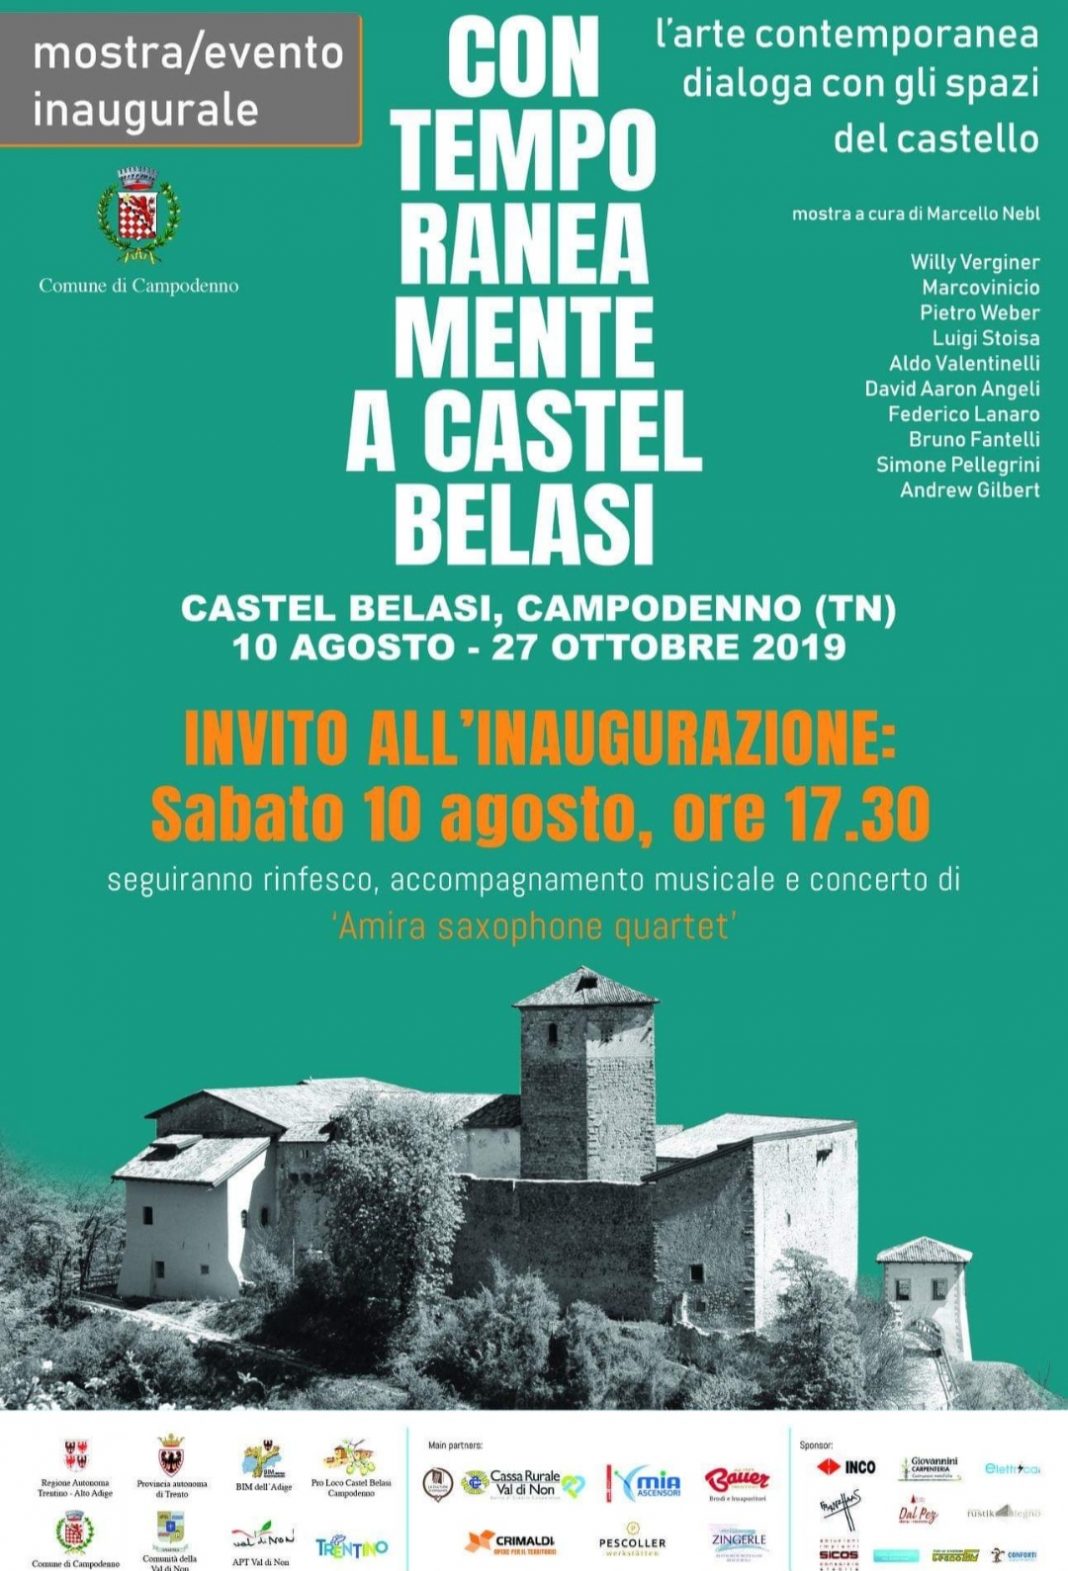 Contemporaneamente a Castel Belasihttps://www.exibart.com/repository/media/2019/08/s-8-1068x1571.jpg